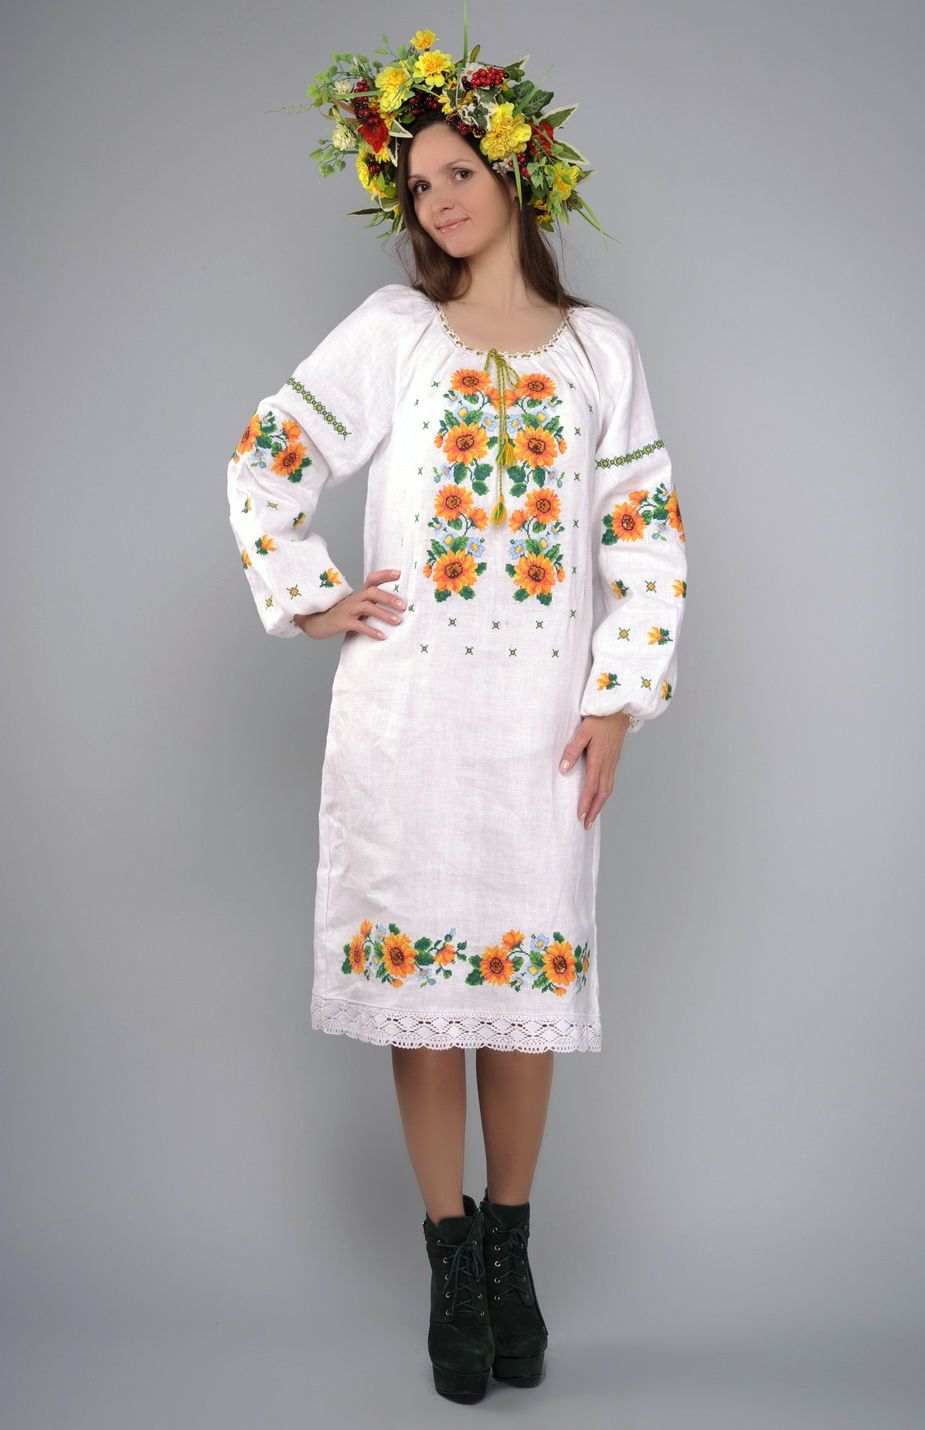 Robe de style ethnique Chemise traditionnelle brodée photo 1